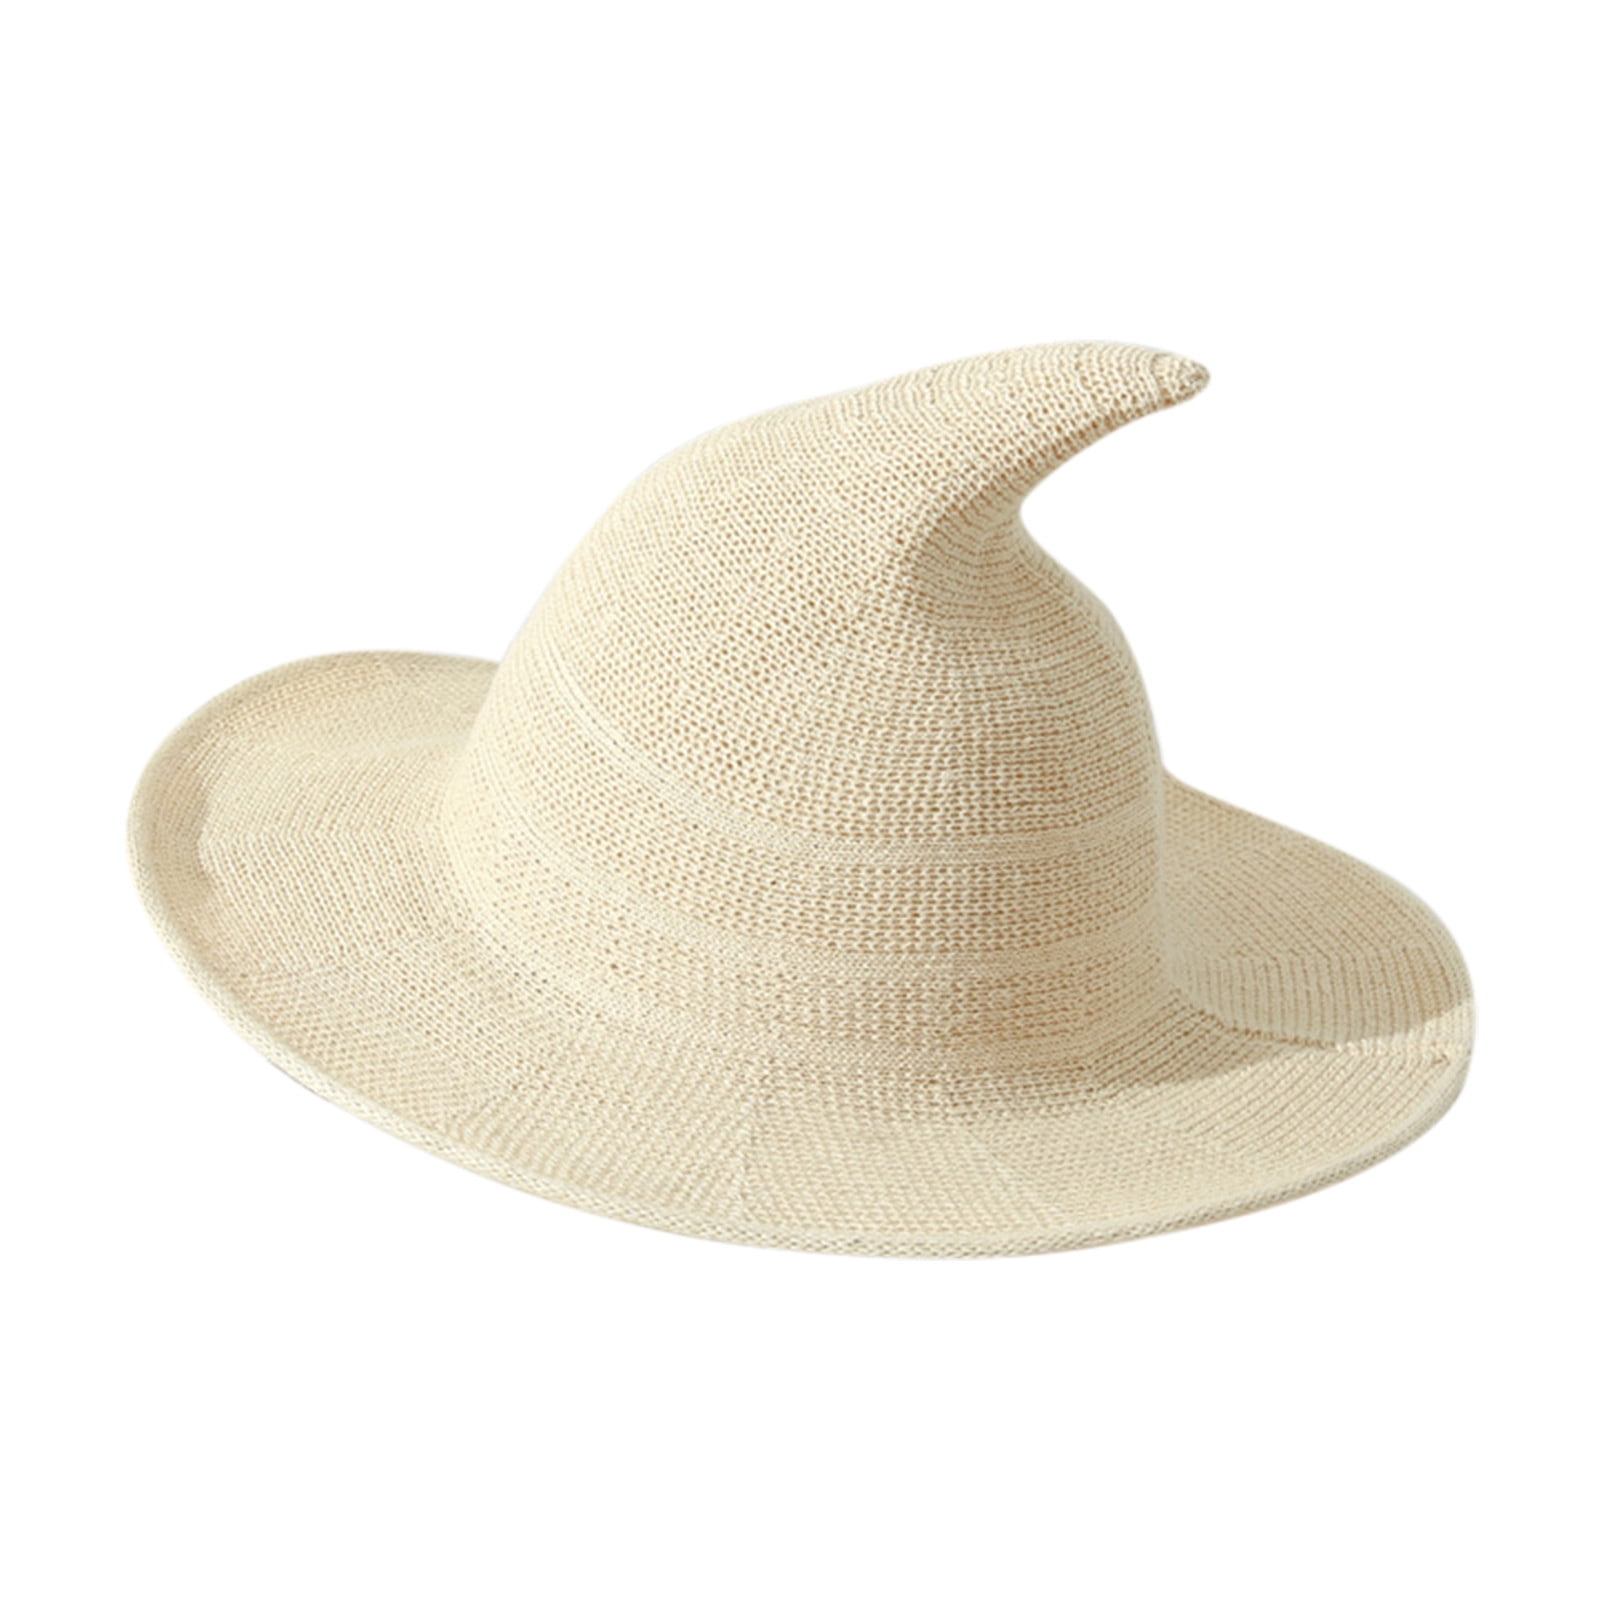 Kids Sharp Pointed Straw Sunhat Beach Sun Hat Cap Halloween Spire Witch Hat 